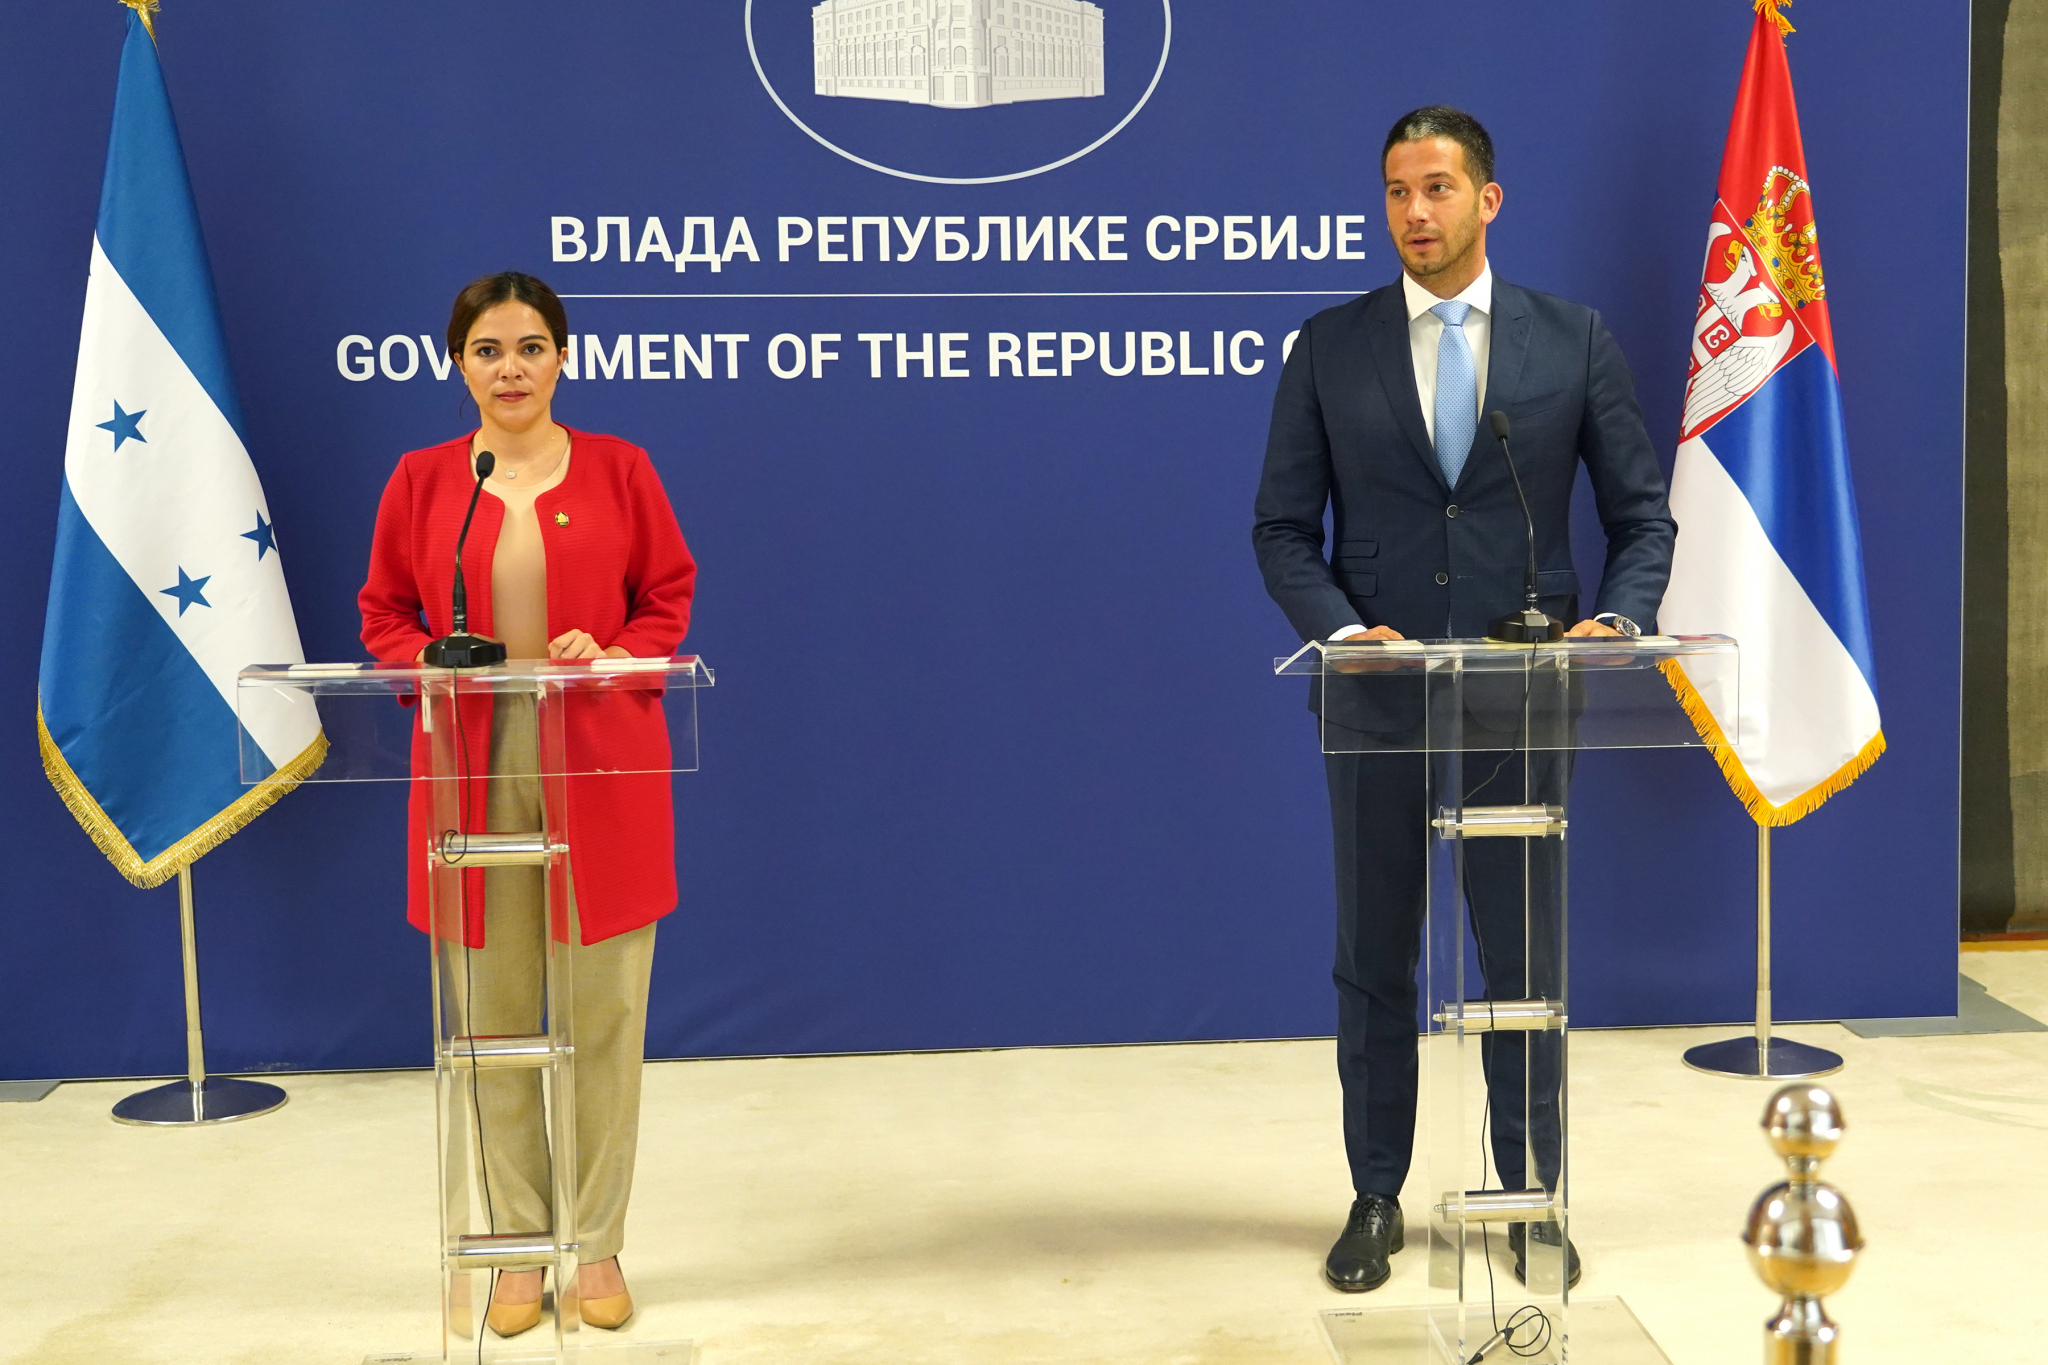 Potpisan Sporazum o saradnji u oblasti sporta između Srbije i Hondurasa, Udovičić: Uveren sam da ćemo u budućnosti ostvariti saradnju na obostranu korist